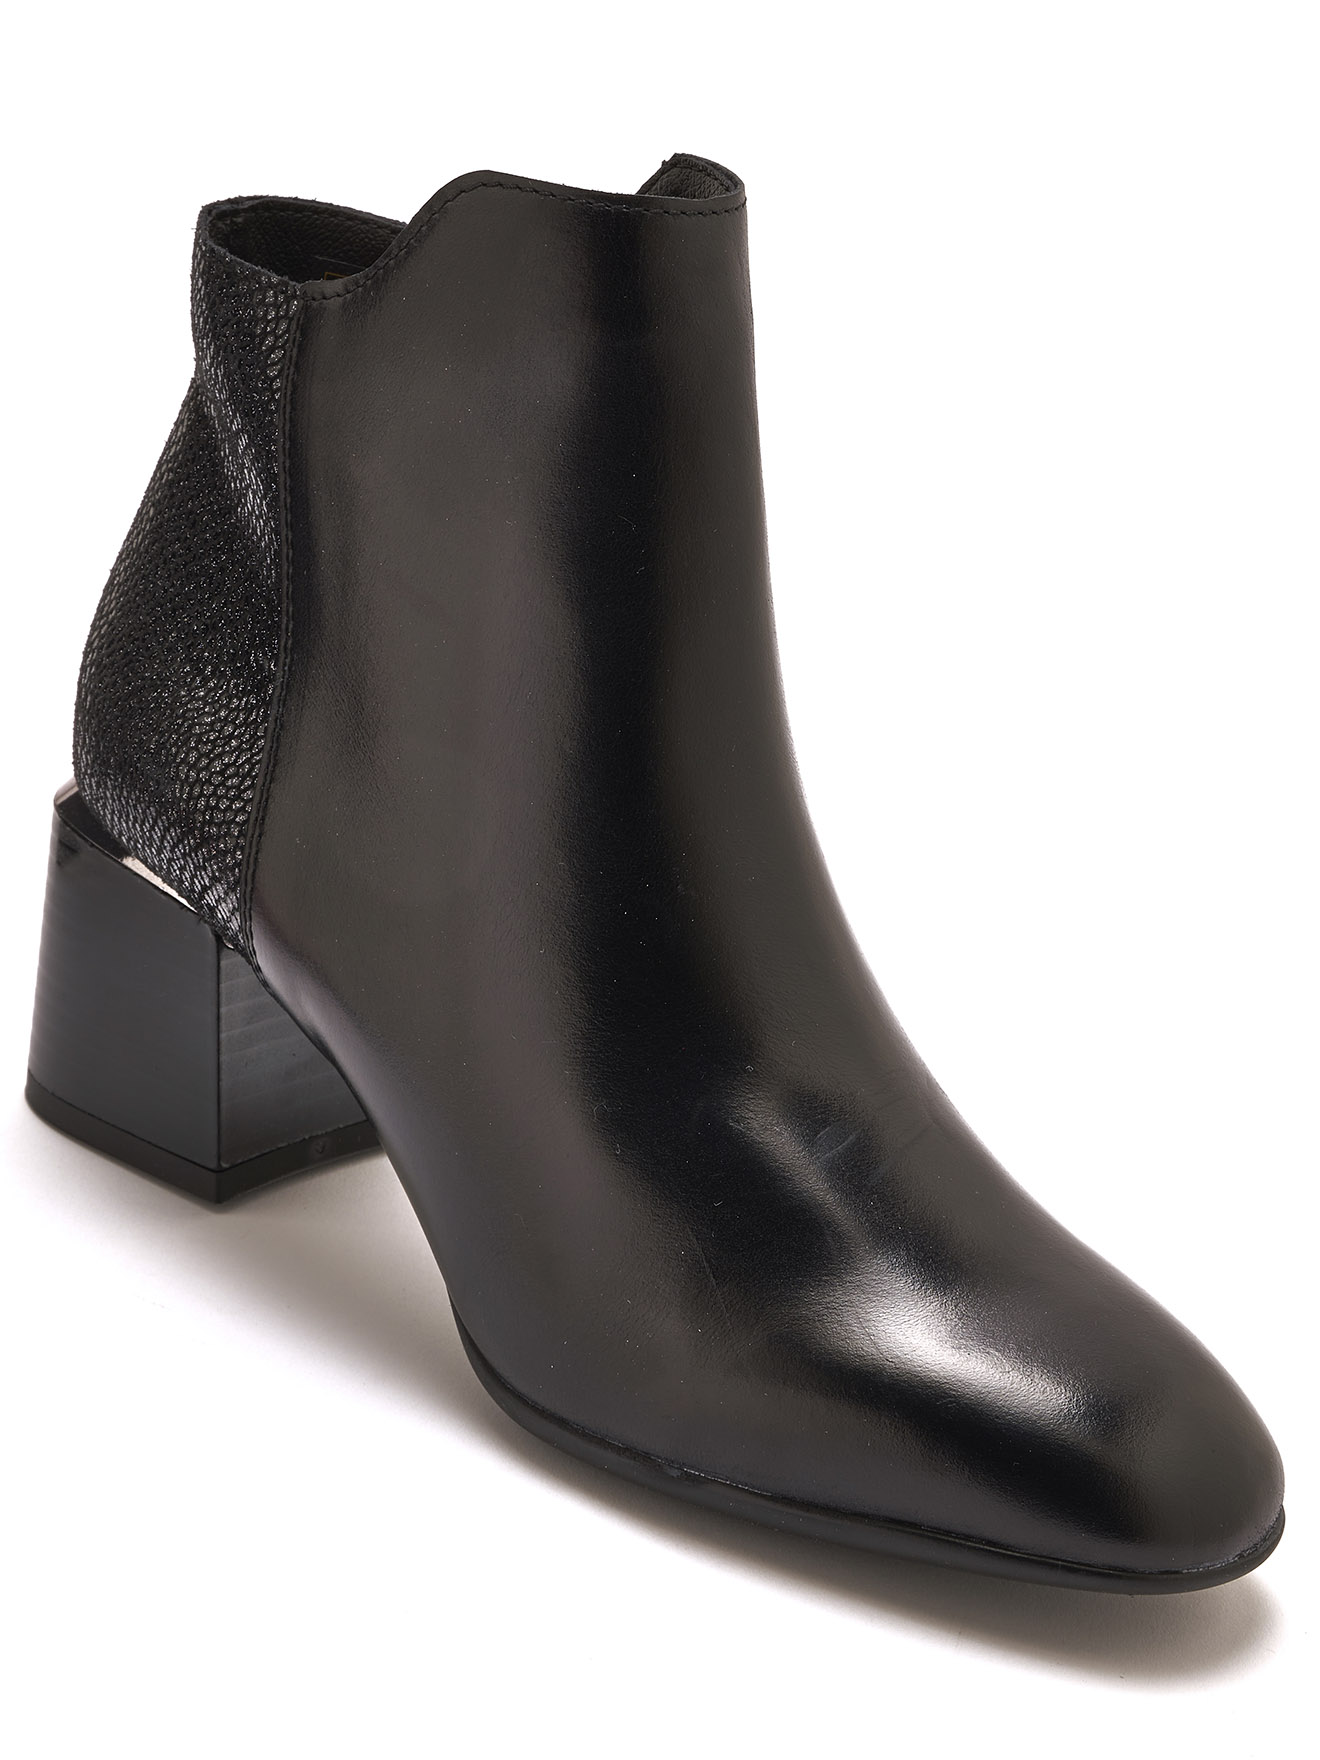 Boots de ville chic et tendance pour femme - Emma & Joséphine vente à domicile de chaussures